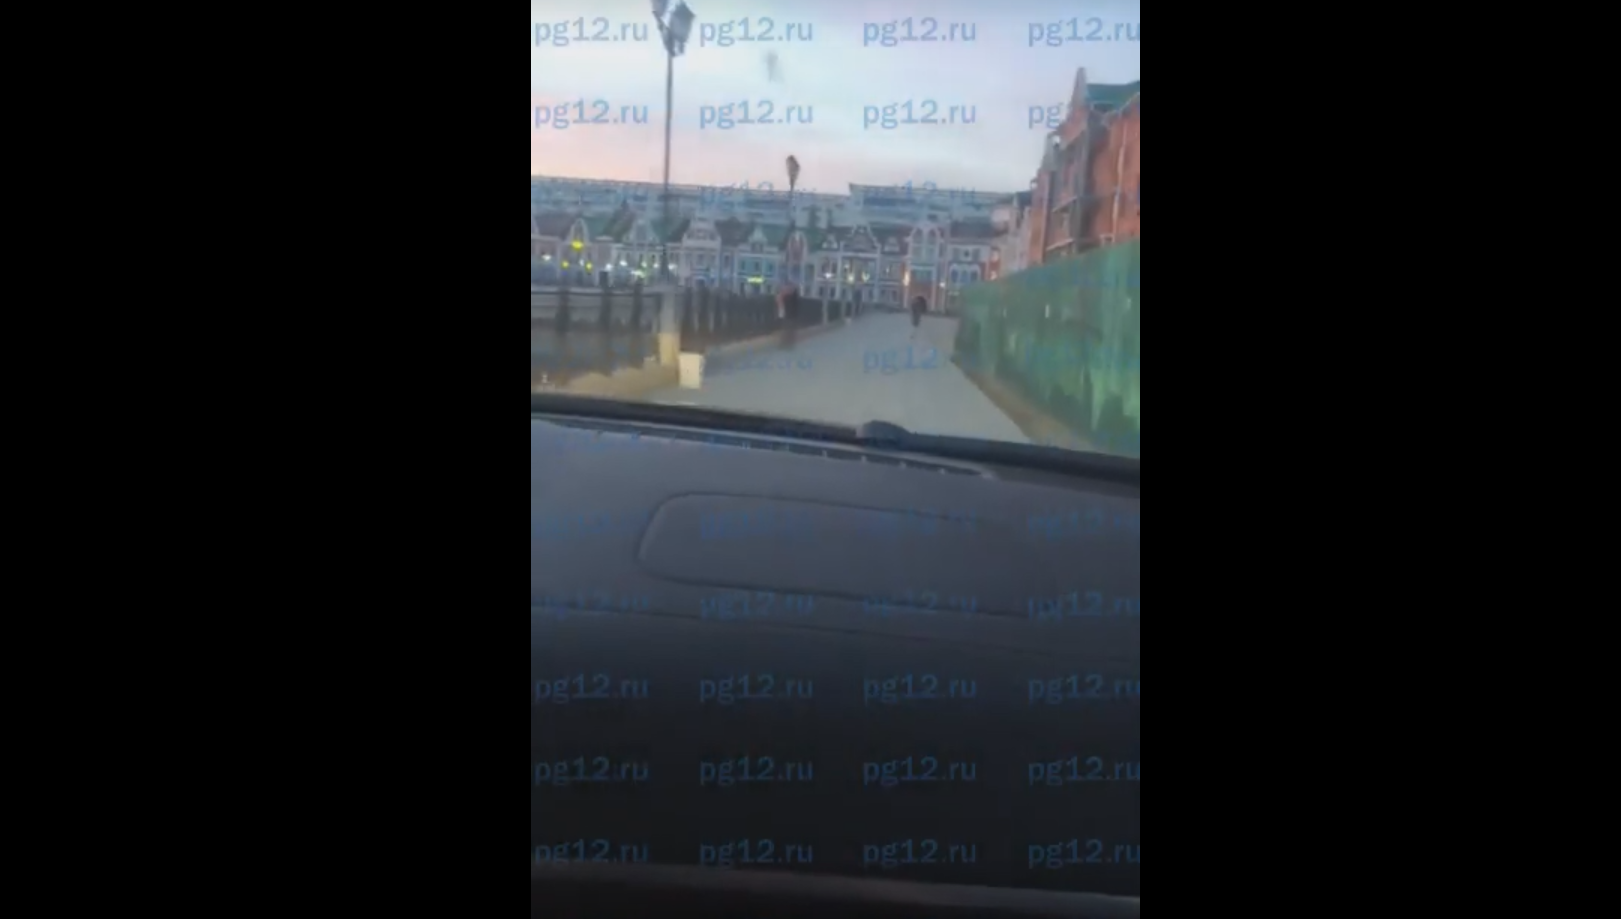 «Плевать на все»: йошкаролинец прокатился по набережной на Porsche (ВИДЕО)